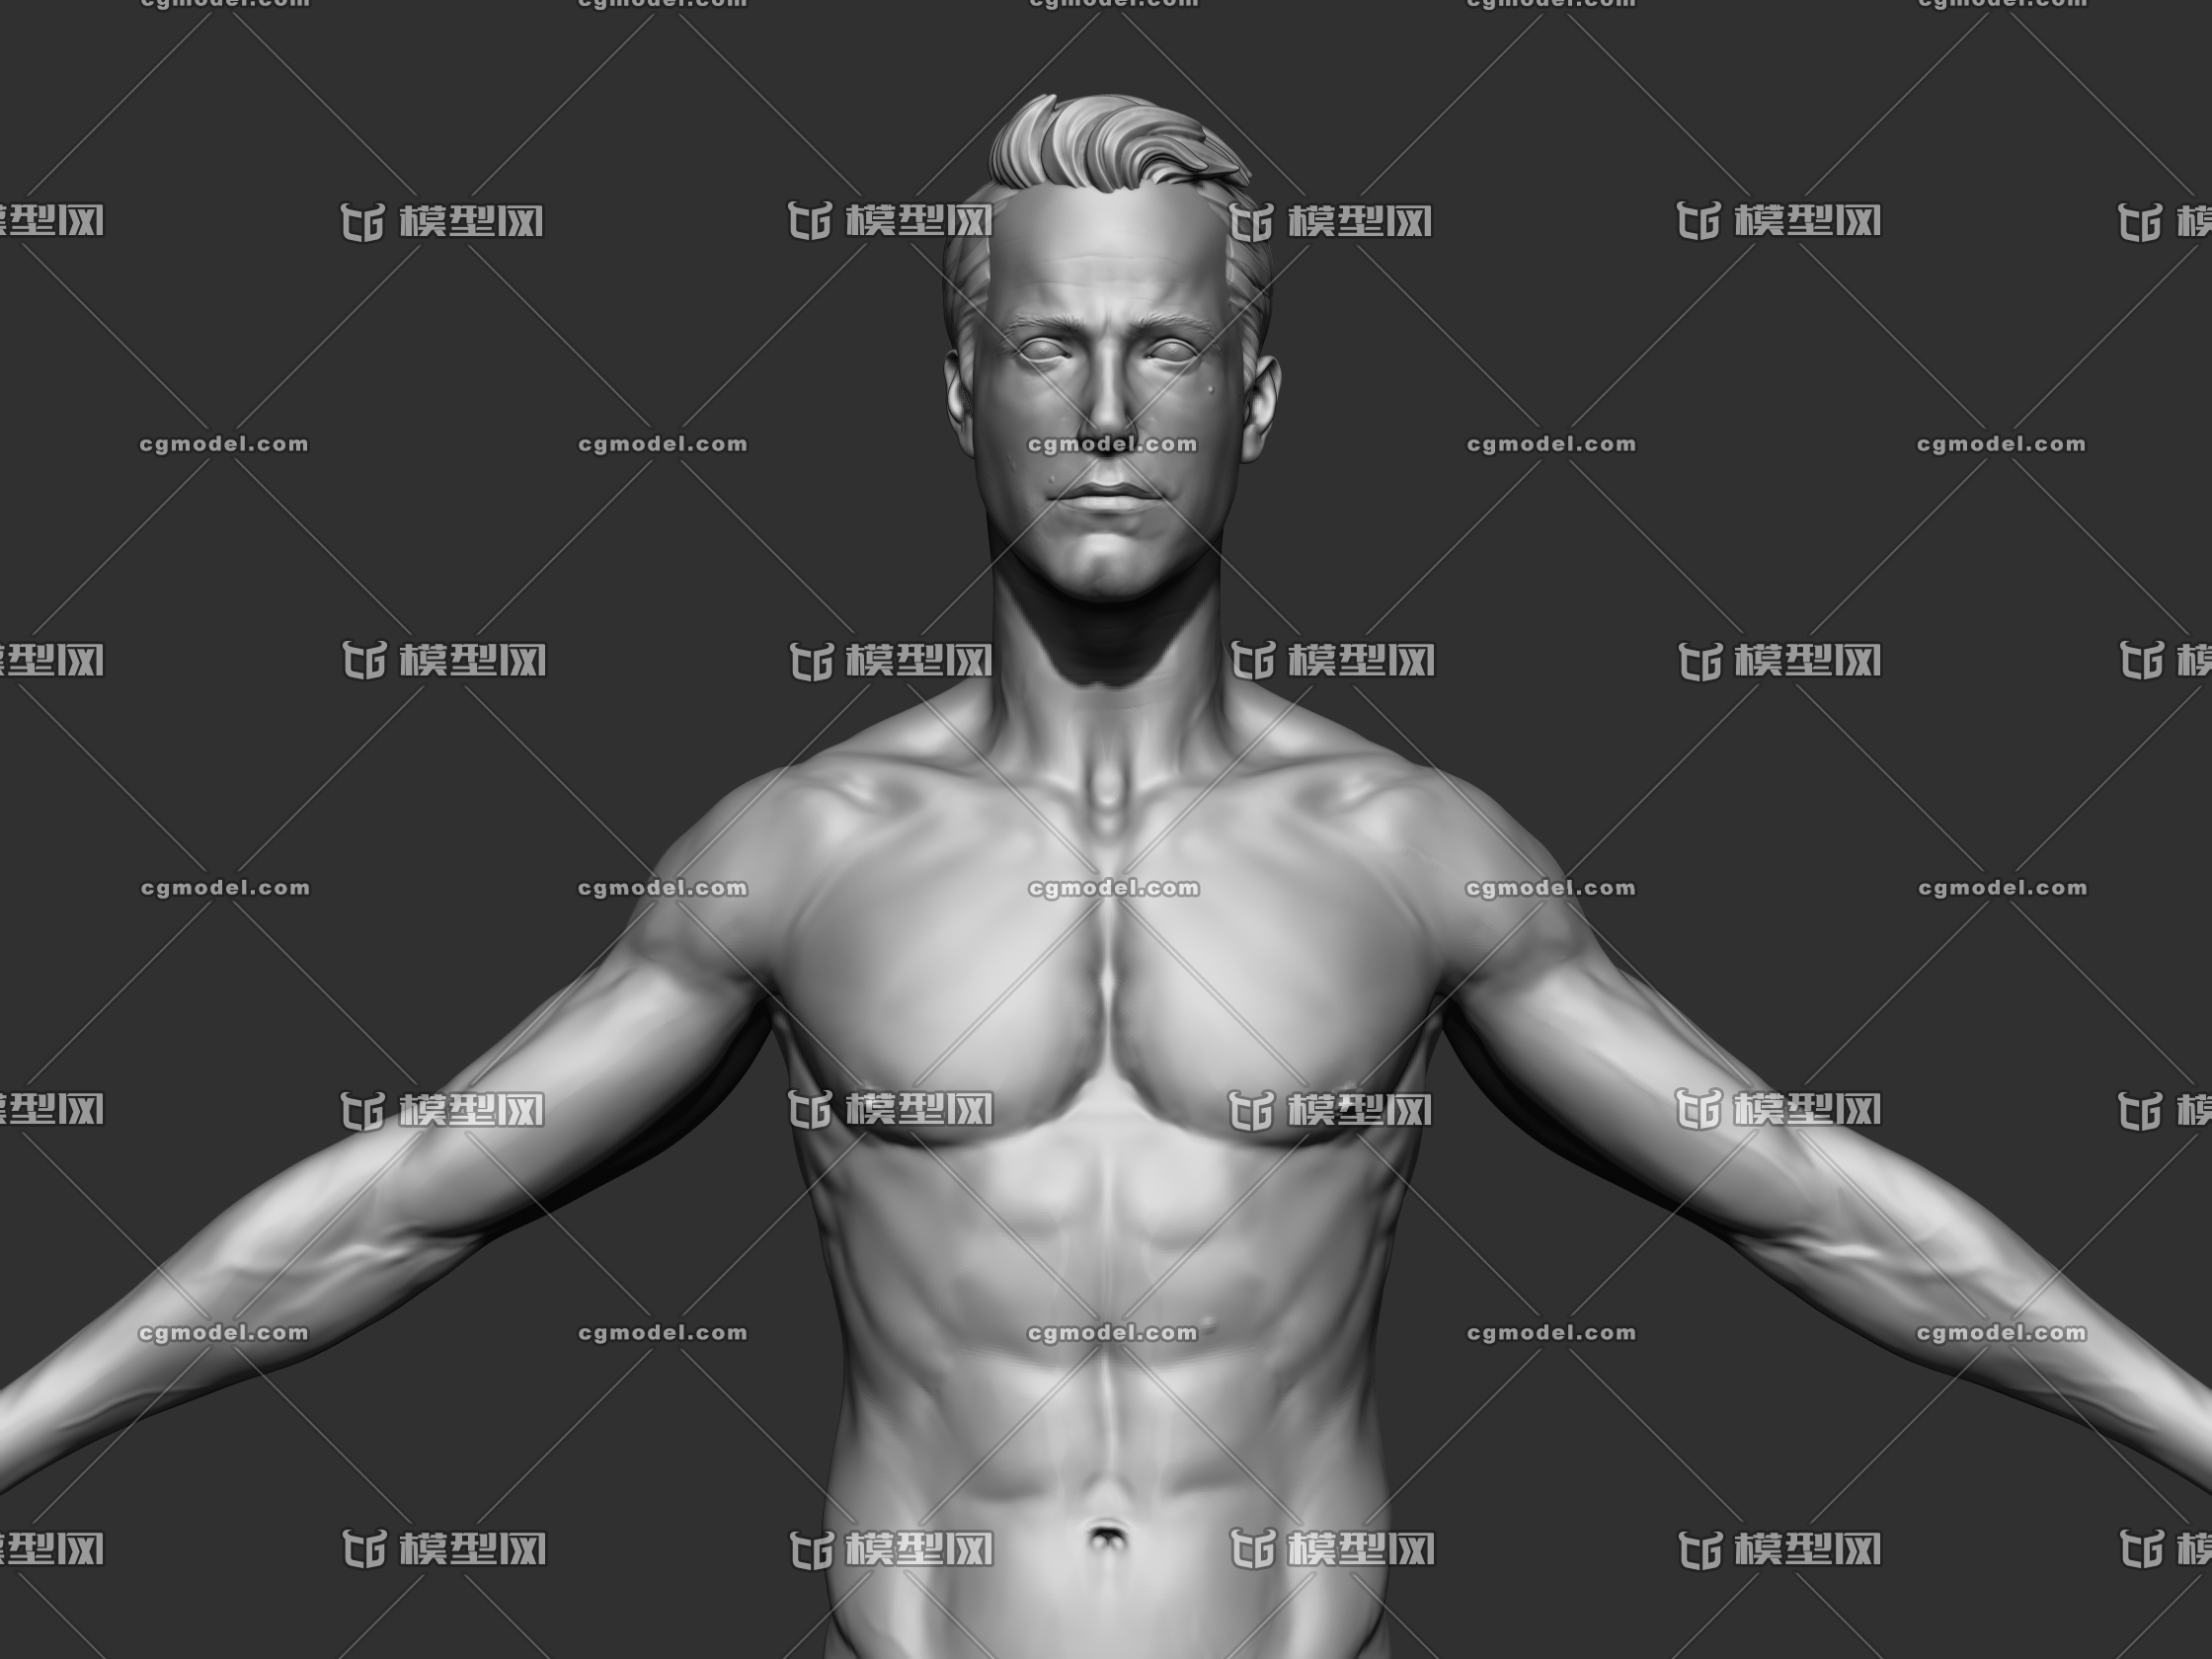 完璧な裸の体を見せている強い男裸の胴体 | プレミアム写真